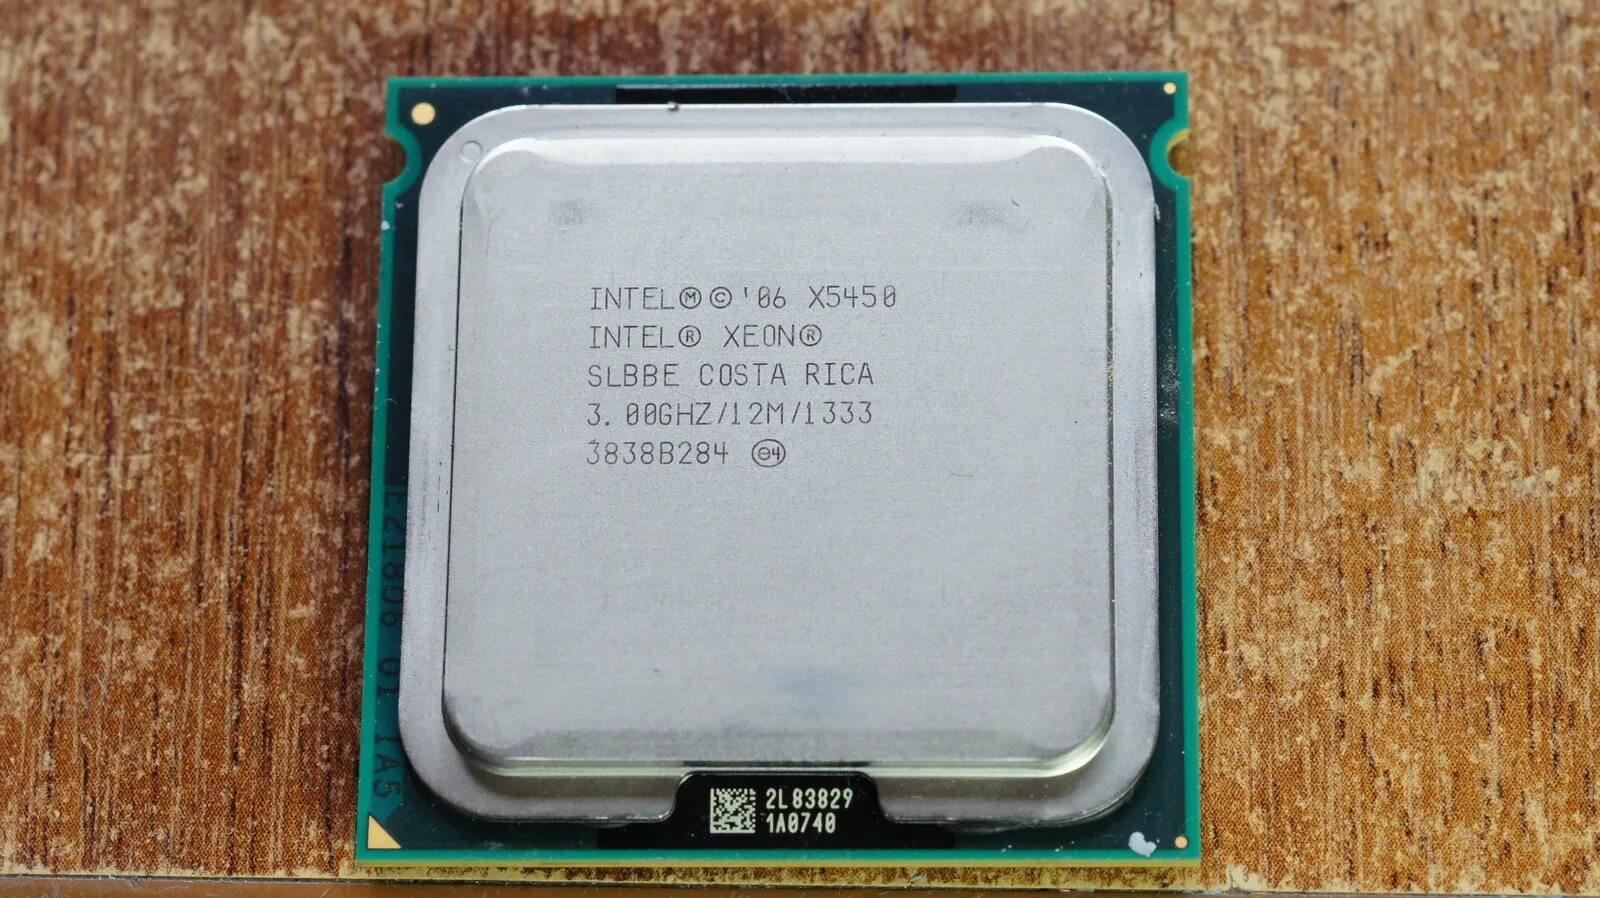 Процессор Xeon e5450. Процессор Socket 771 Intel Xeon e5205. Intel Core 2 Quad q9300 Yorkfield lga775, 4 x 2500 МГЦ. Процессор Xeon e5430. Intel xeon x5450